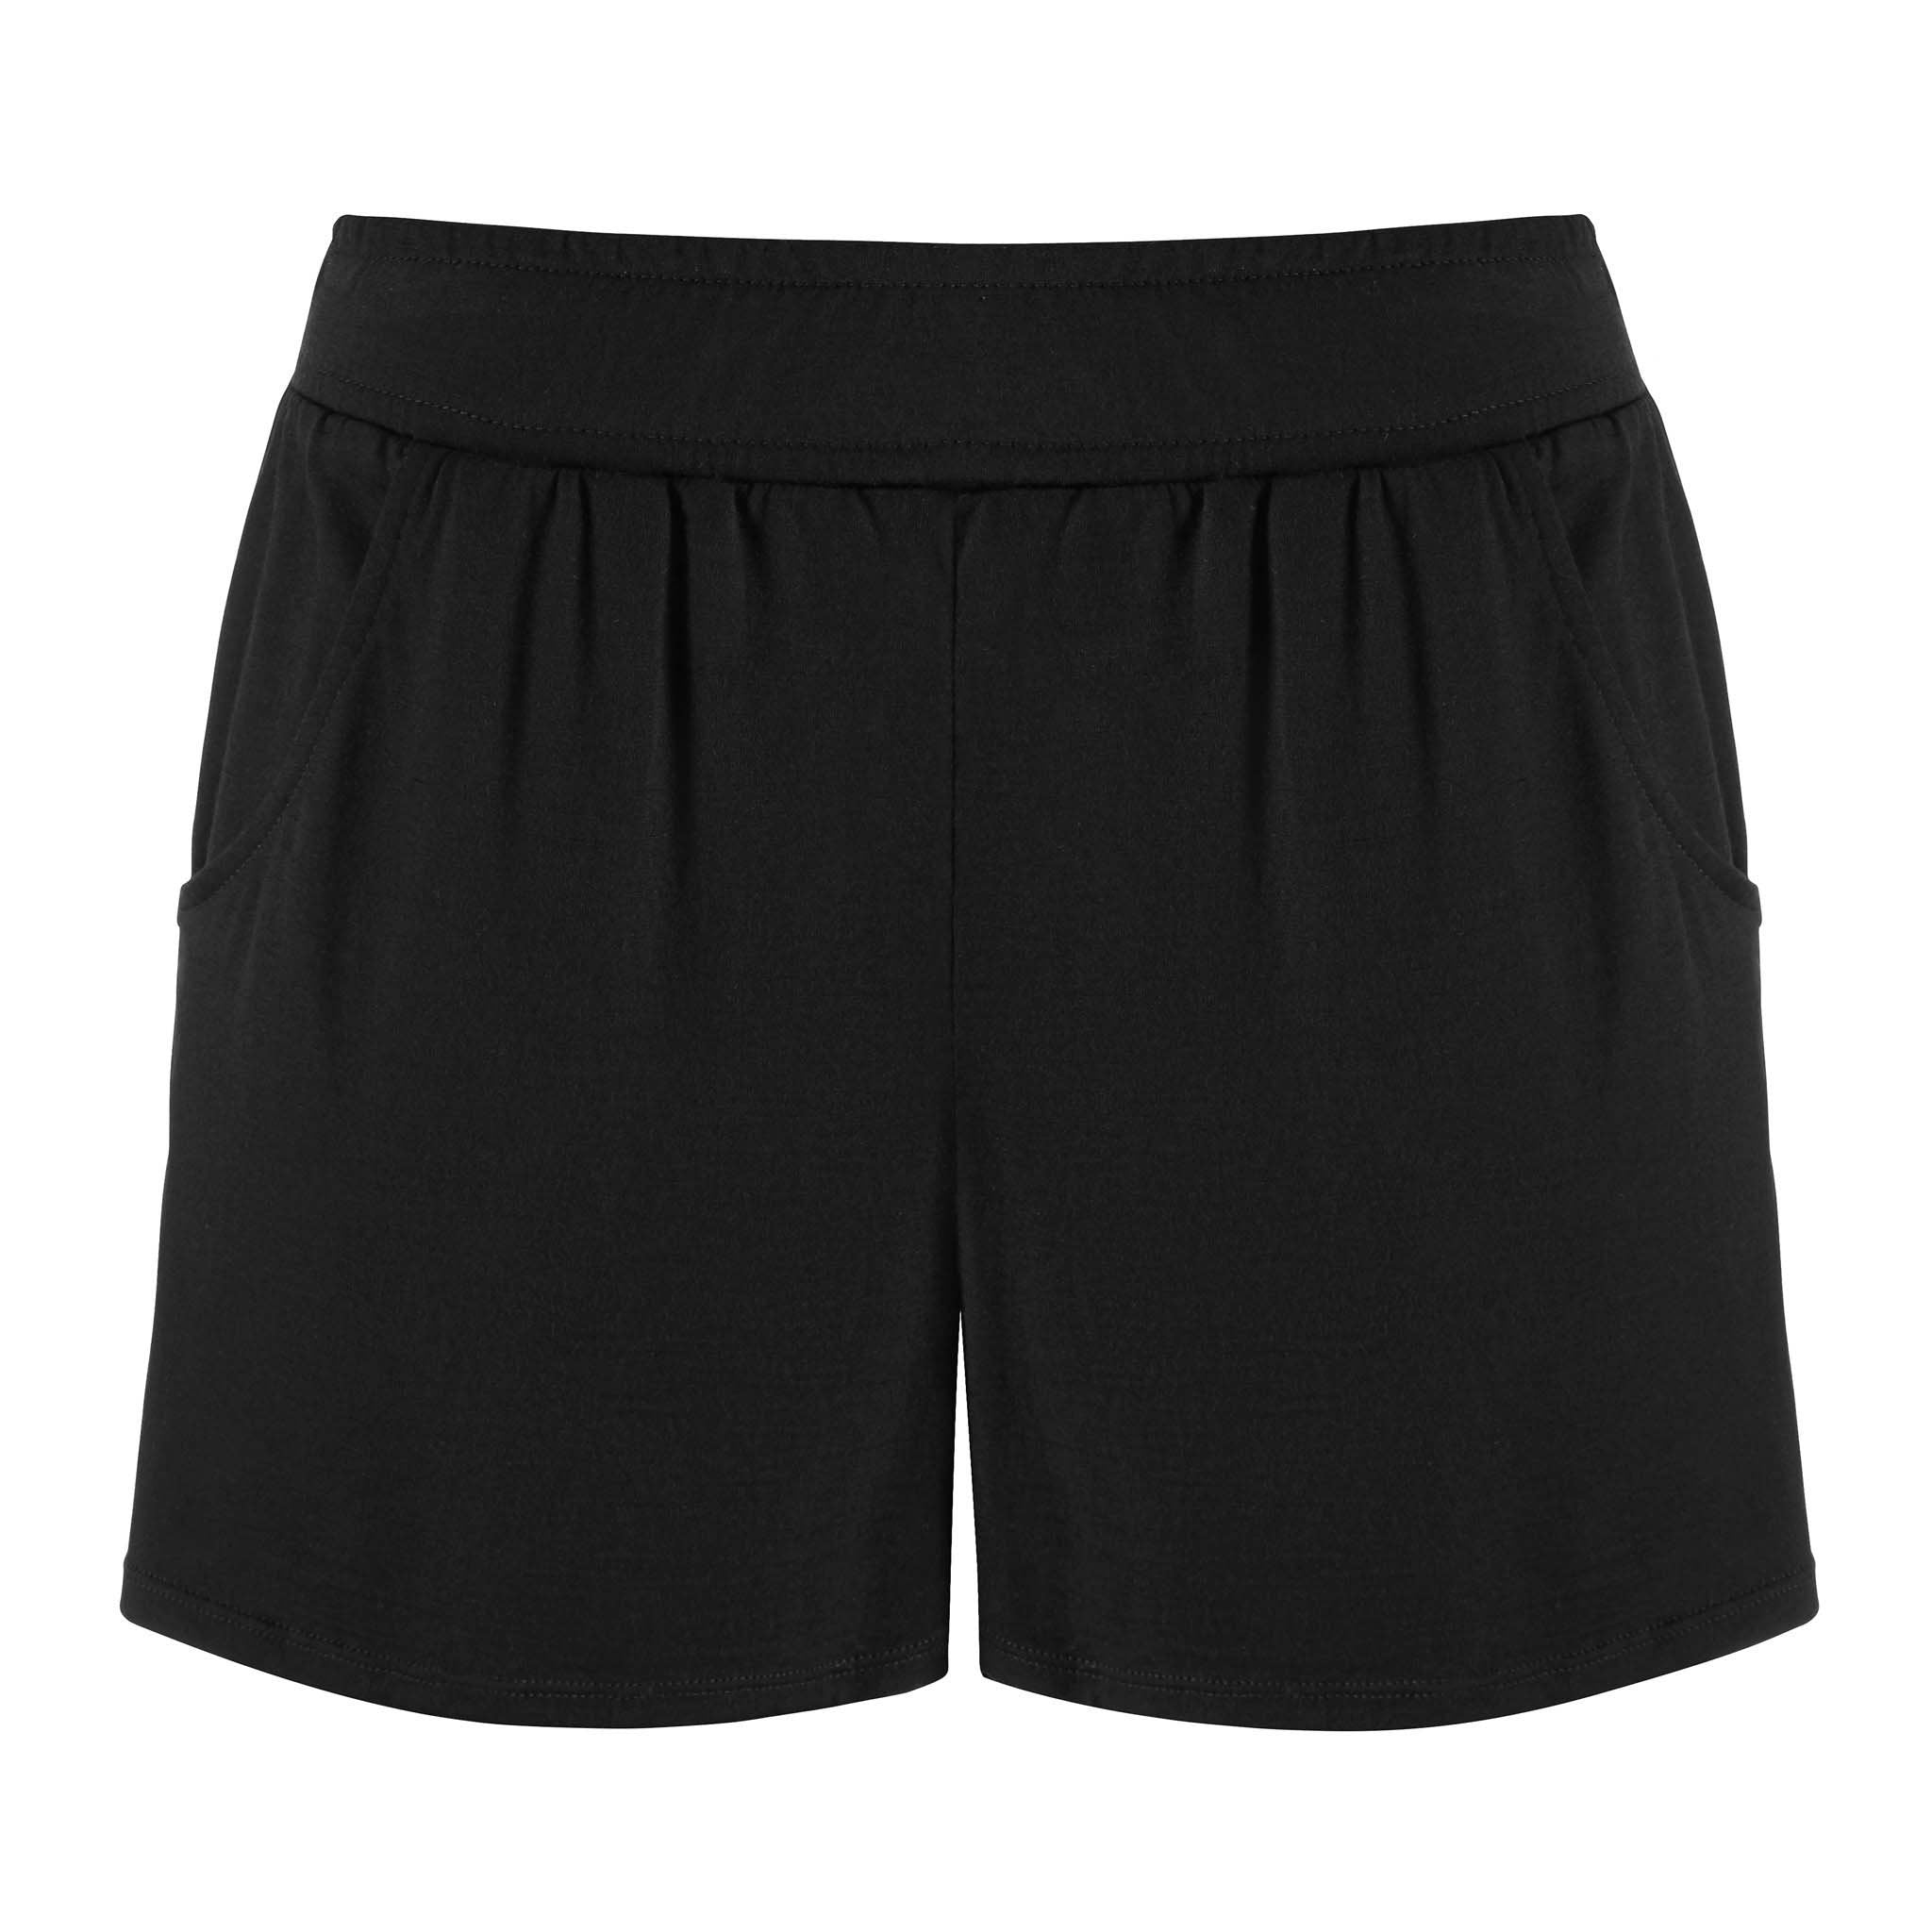  Women's Casual Shorts - Wool / Women's Casual Shorts / Women's  Shorts: Clothing, Shoes & Jewelry